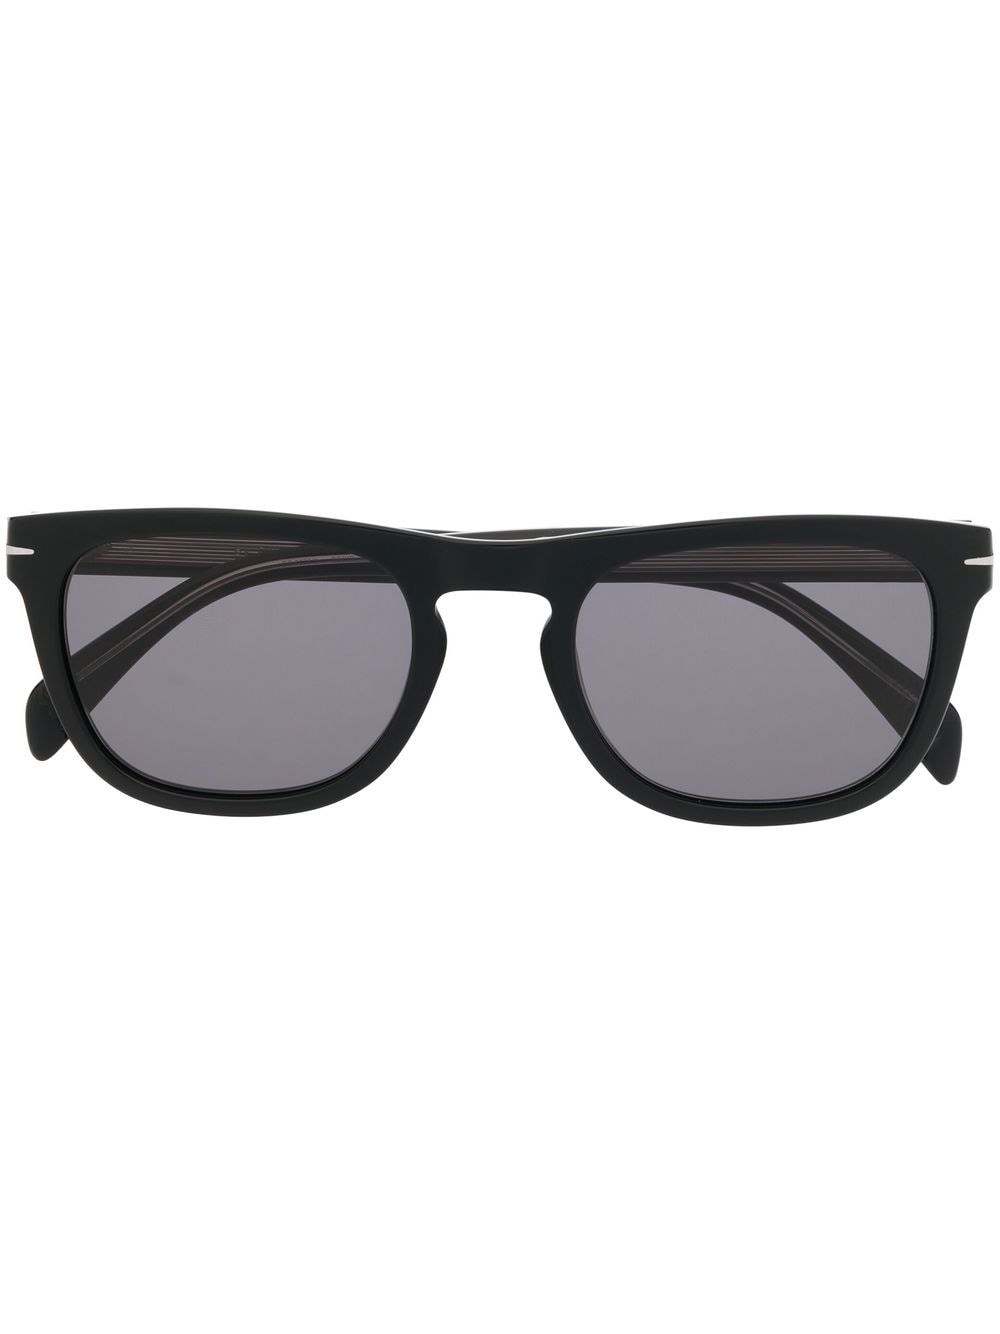 Eyewear by David Beckham square-frame sunglasses - Black von Eyewear by David Beckham